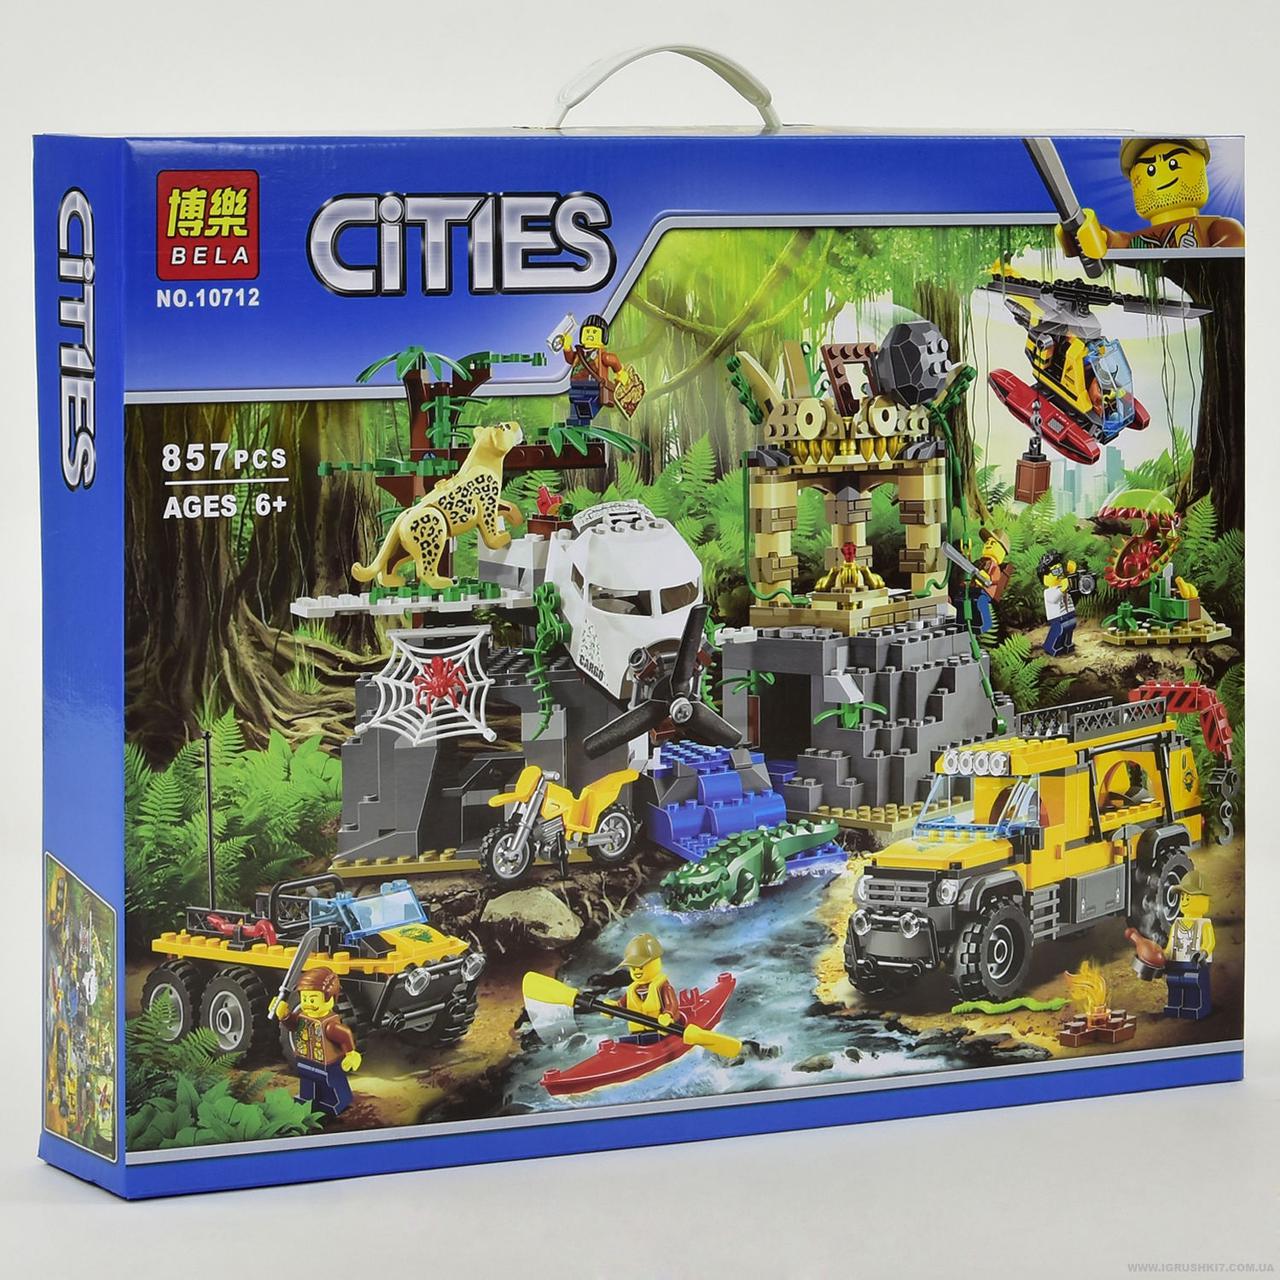 Конструктор Bela Cities 10712 "База исследователей джунглей" (аналог Lego City 60161) 857 д